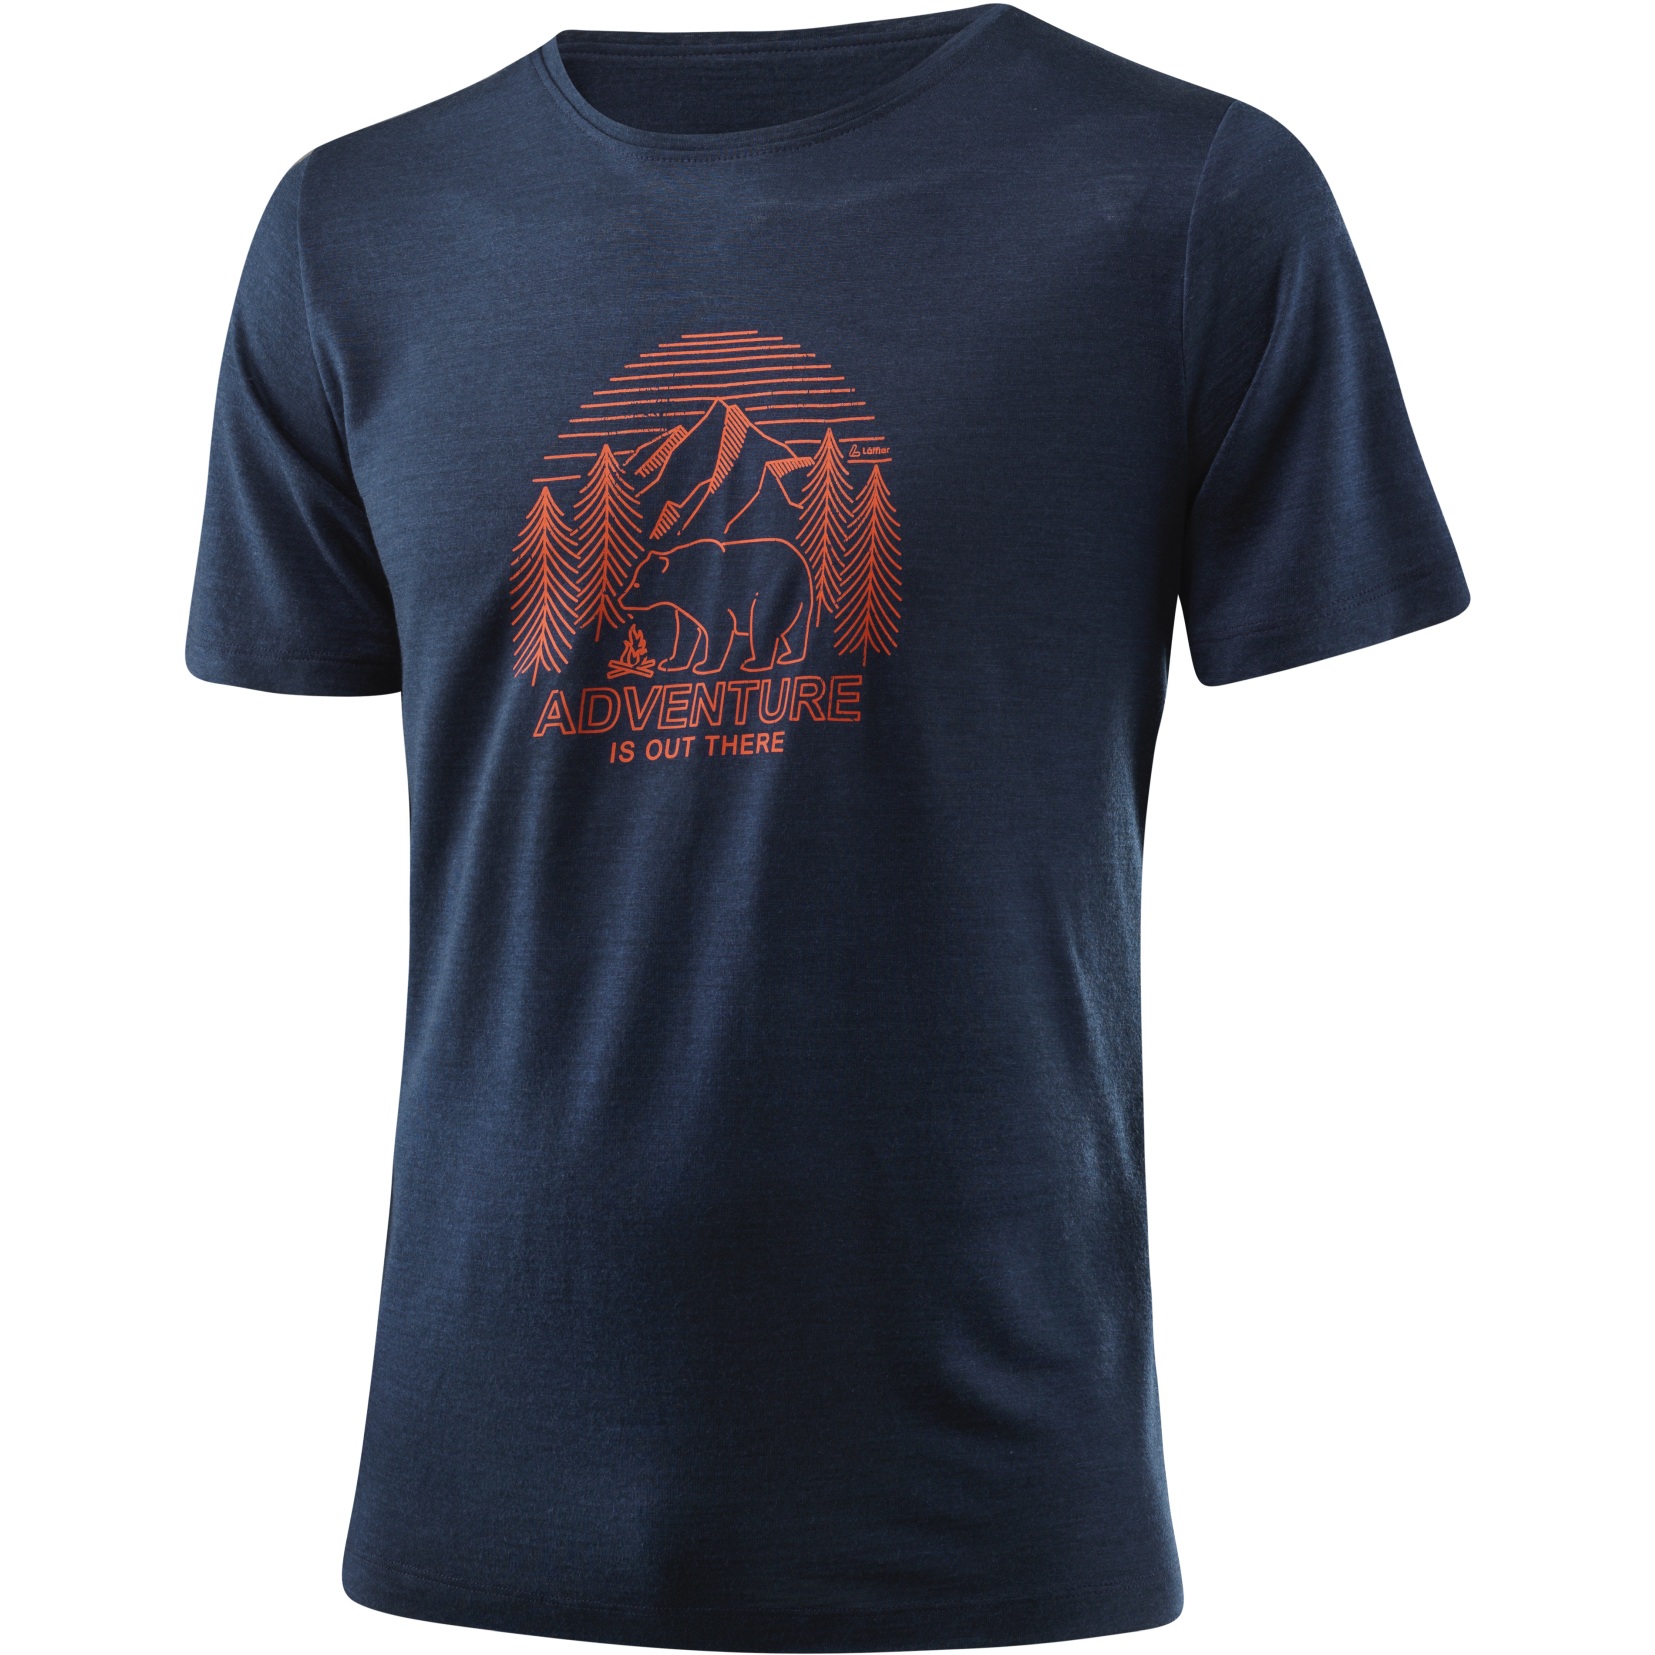 Produktbild von Löffler Adventure Merino-Tencel™ Printshirt Herren - dunkelblau 495